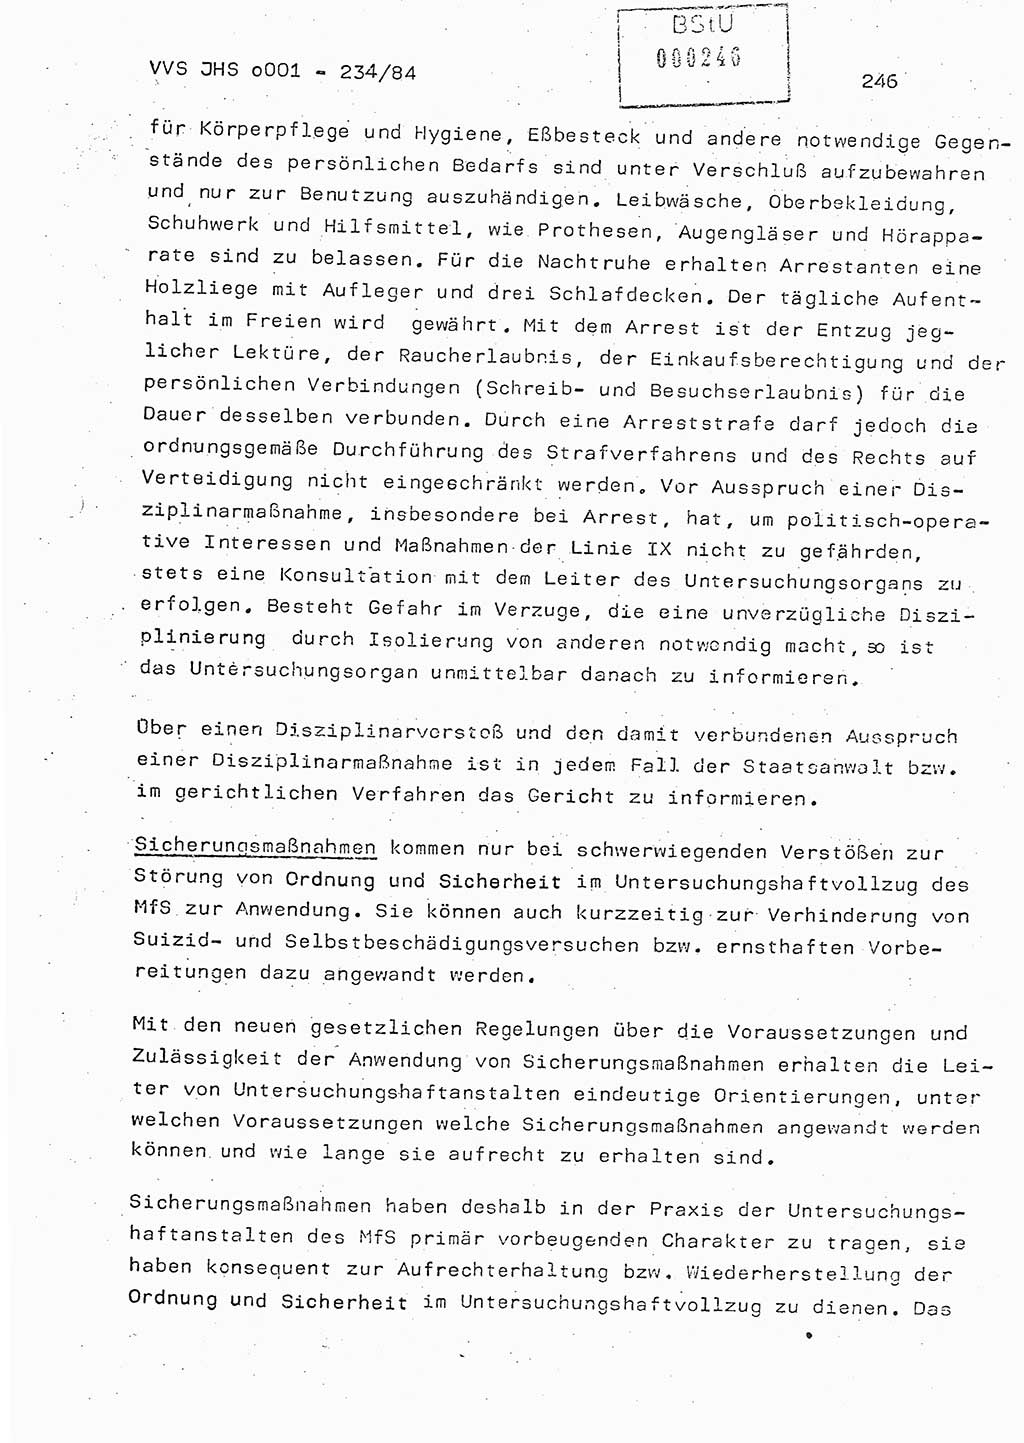 Dissertation Oberst Siegfried Rataizick (Abt. ⅩⅣ), Oberstleutnant Volkmar Heinz (Abt. ⅩⅣ), Oberstleutnant Werner Stein (HA Ⅸ), Hauptmann Heinz Conrad (JHS), Ministerium für Staatssicherheit (MfS) [Deutsche Demokratische Republik (DDR)], Juristische Hochschule (JHS), Vertrauliche Verschlußsache (VVS) o001-234/84, Potsdam 1984, Seite 246 (Diss. MfS DDR JHS VVS o001-234/84 1984, S. 246)